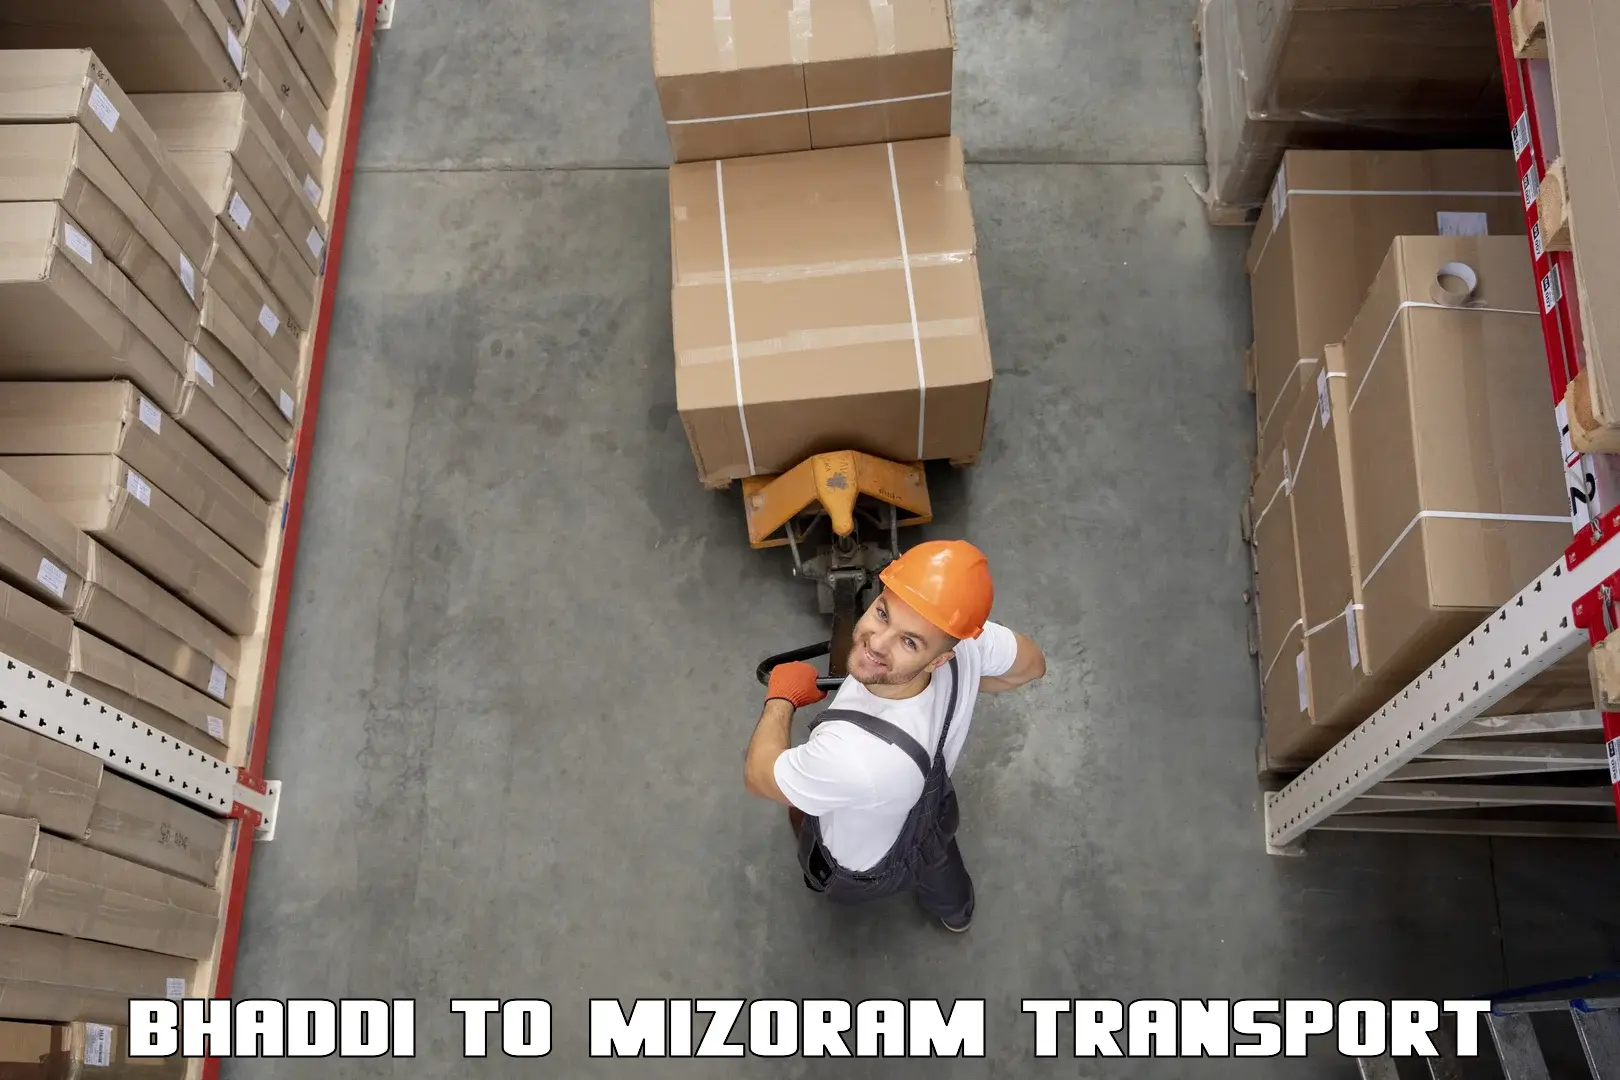 Shipping partner Bhaddi to Mizoram